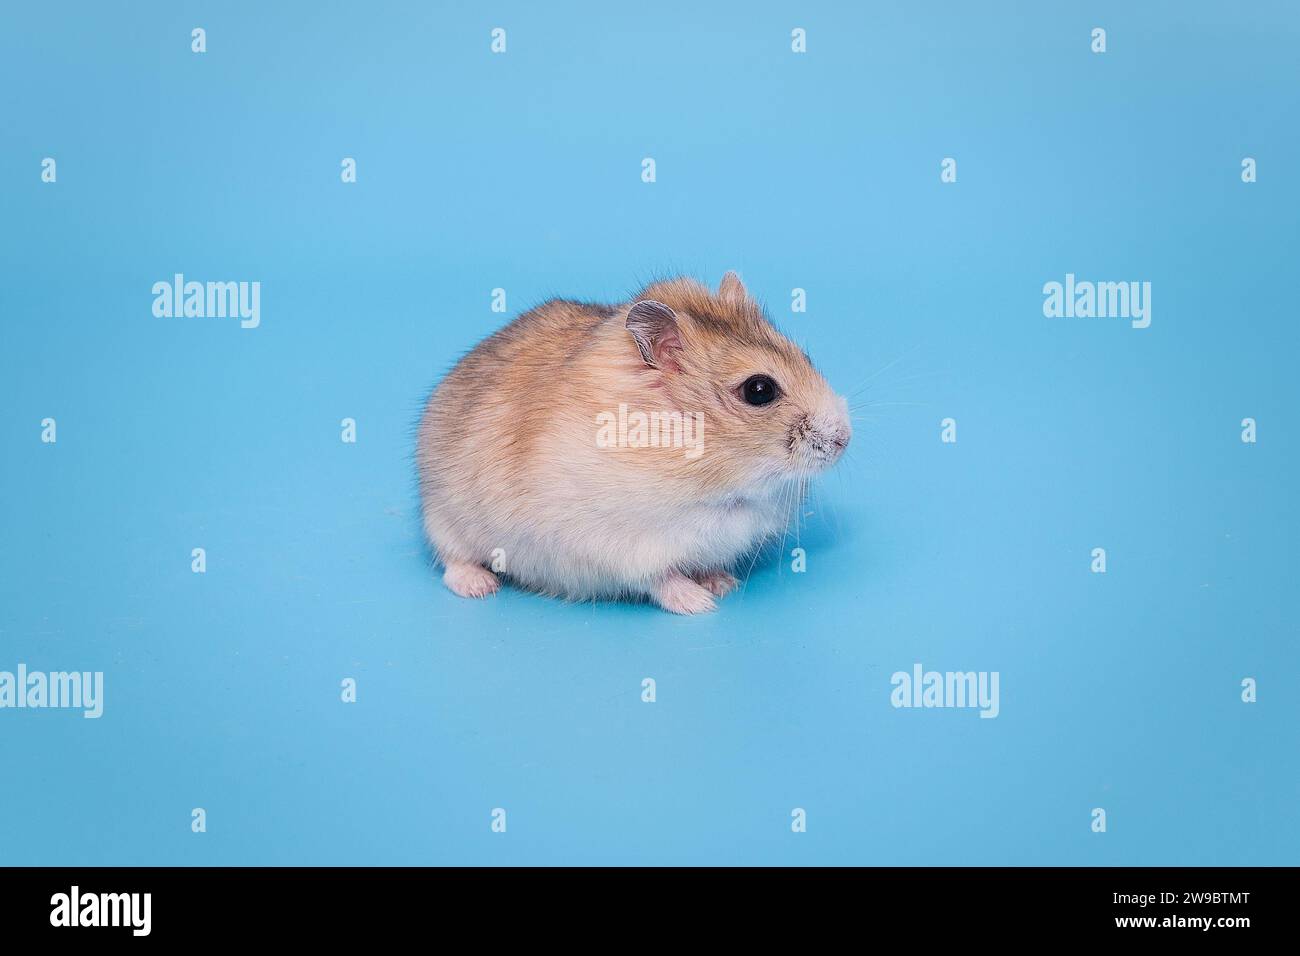 Petit hamster dzungarian brun, sur fond bleu Banque D'Images